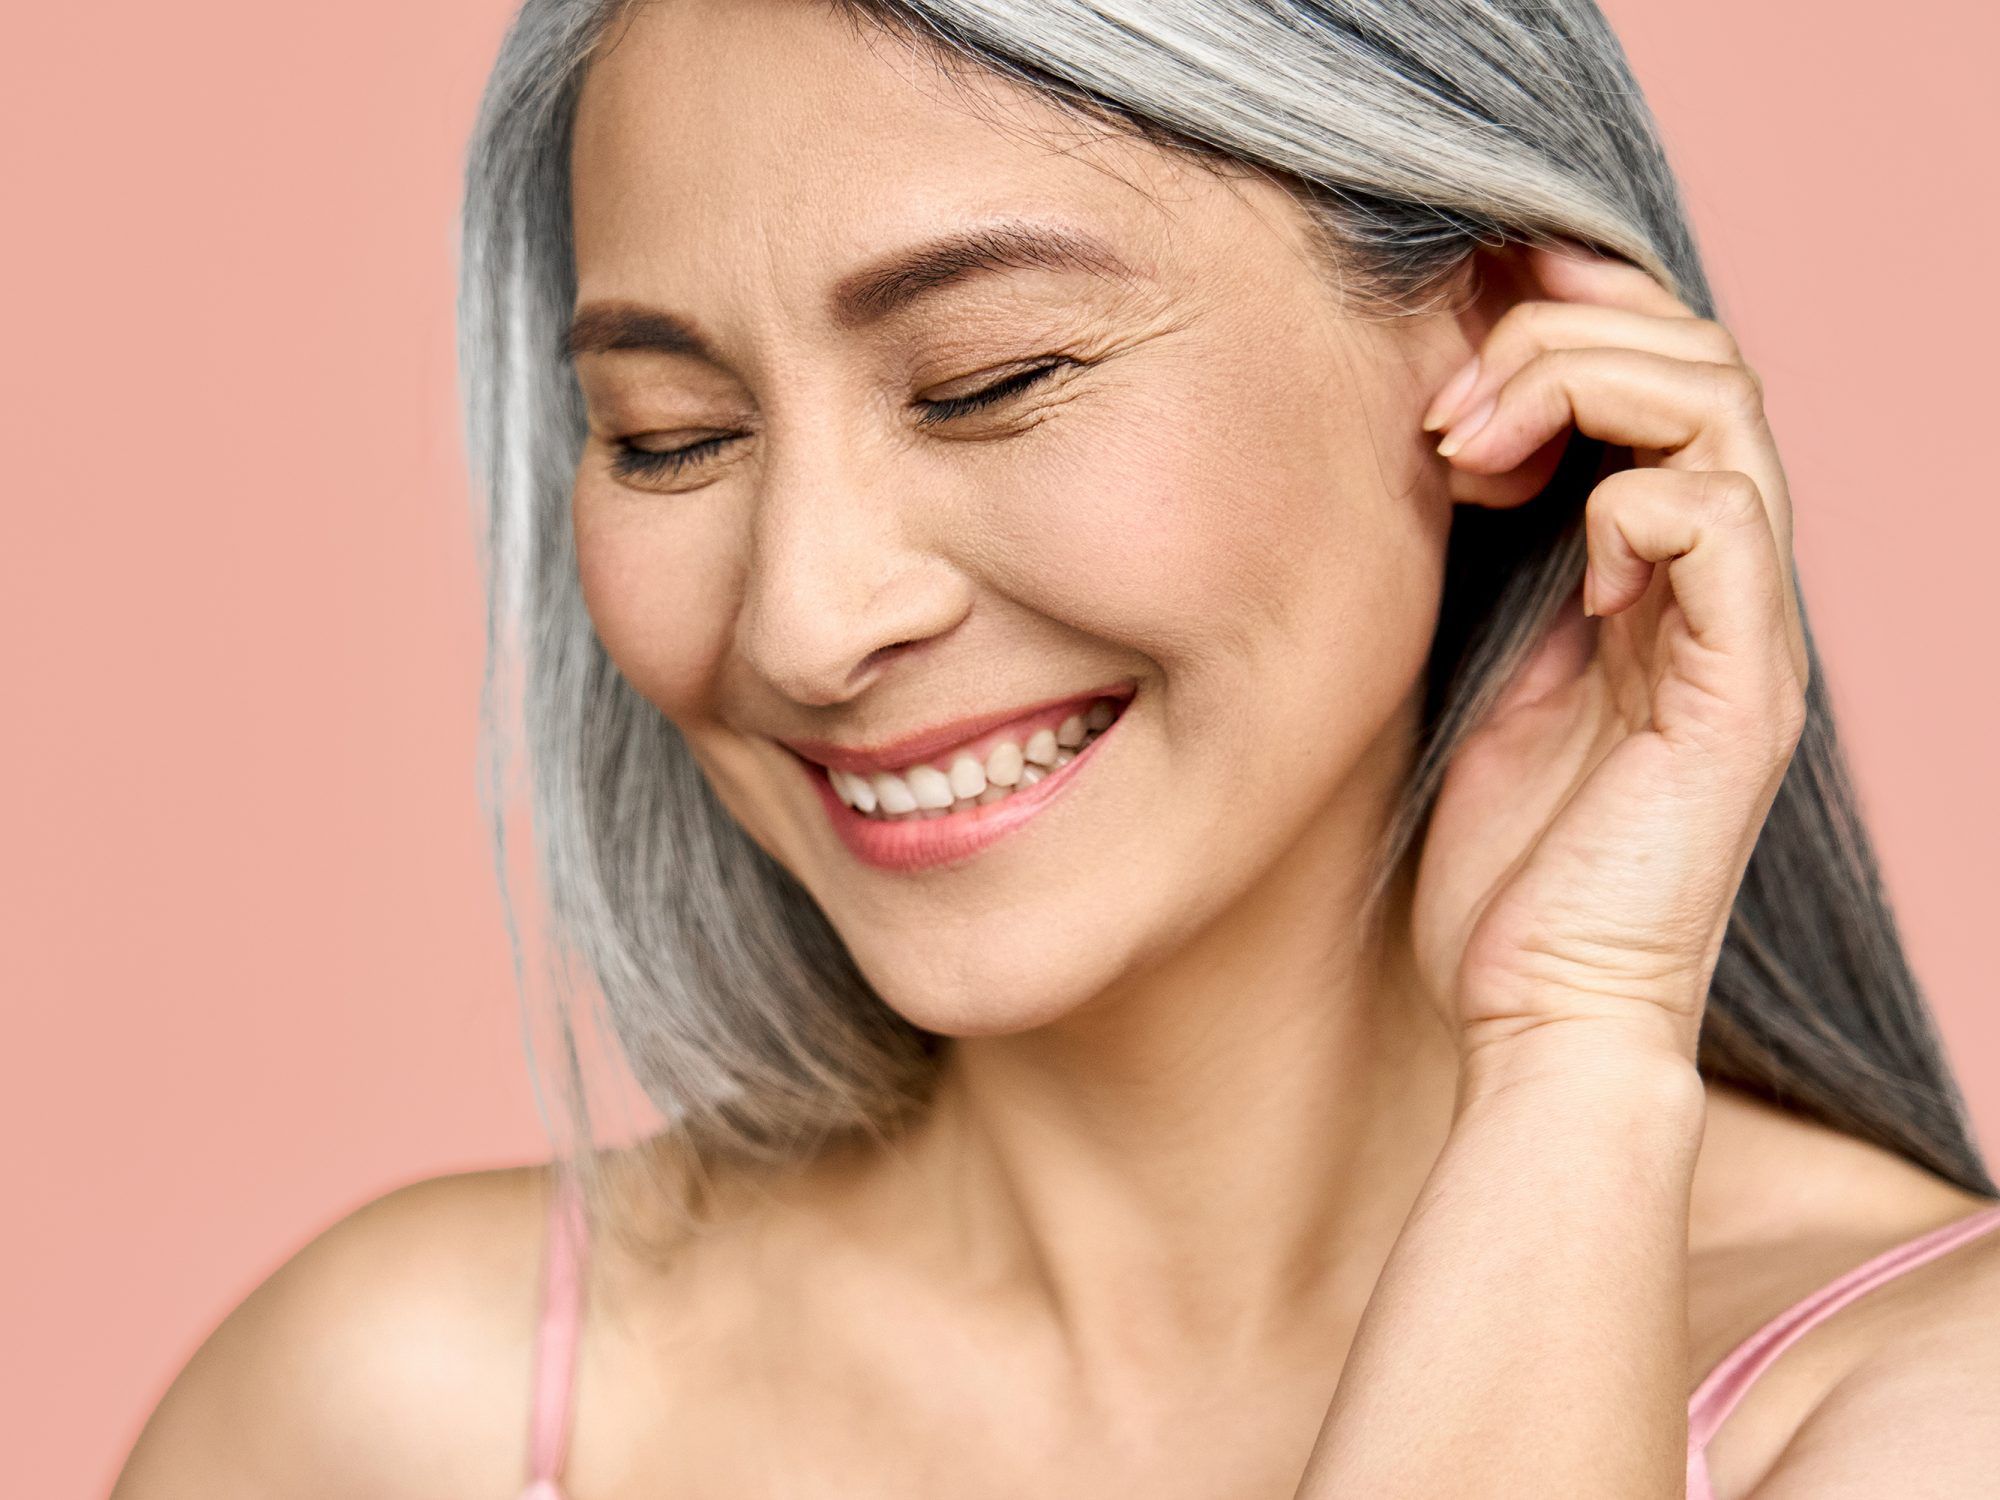 Tiến sĩ Howard Murad, MD và người sáng lập Murad Skincare, Singapore cho biết trong 3 năm đầu của thời kỳ mãn kinh, bạn sẽ mất 25% lượng collagen, khiến da bị khô và mỏng đi. Dù vây, bạn vẫn có thể có biện pháp cải thiện để bảo dưỡng làn da suốt thời gian này.